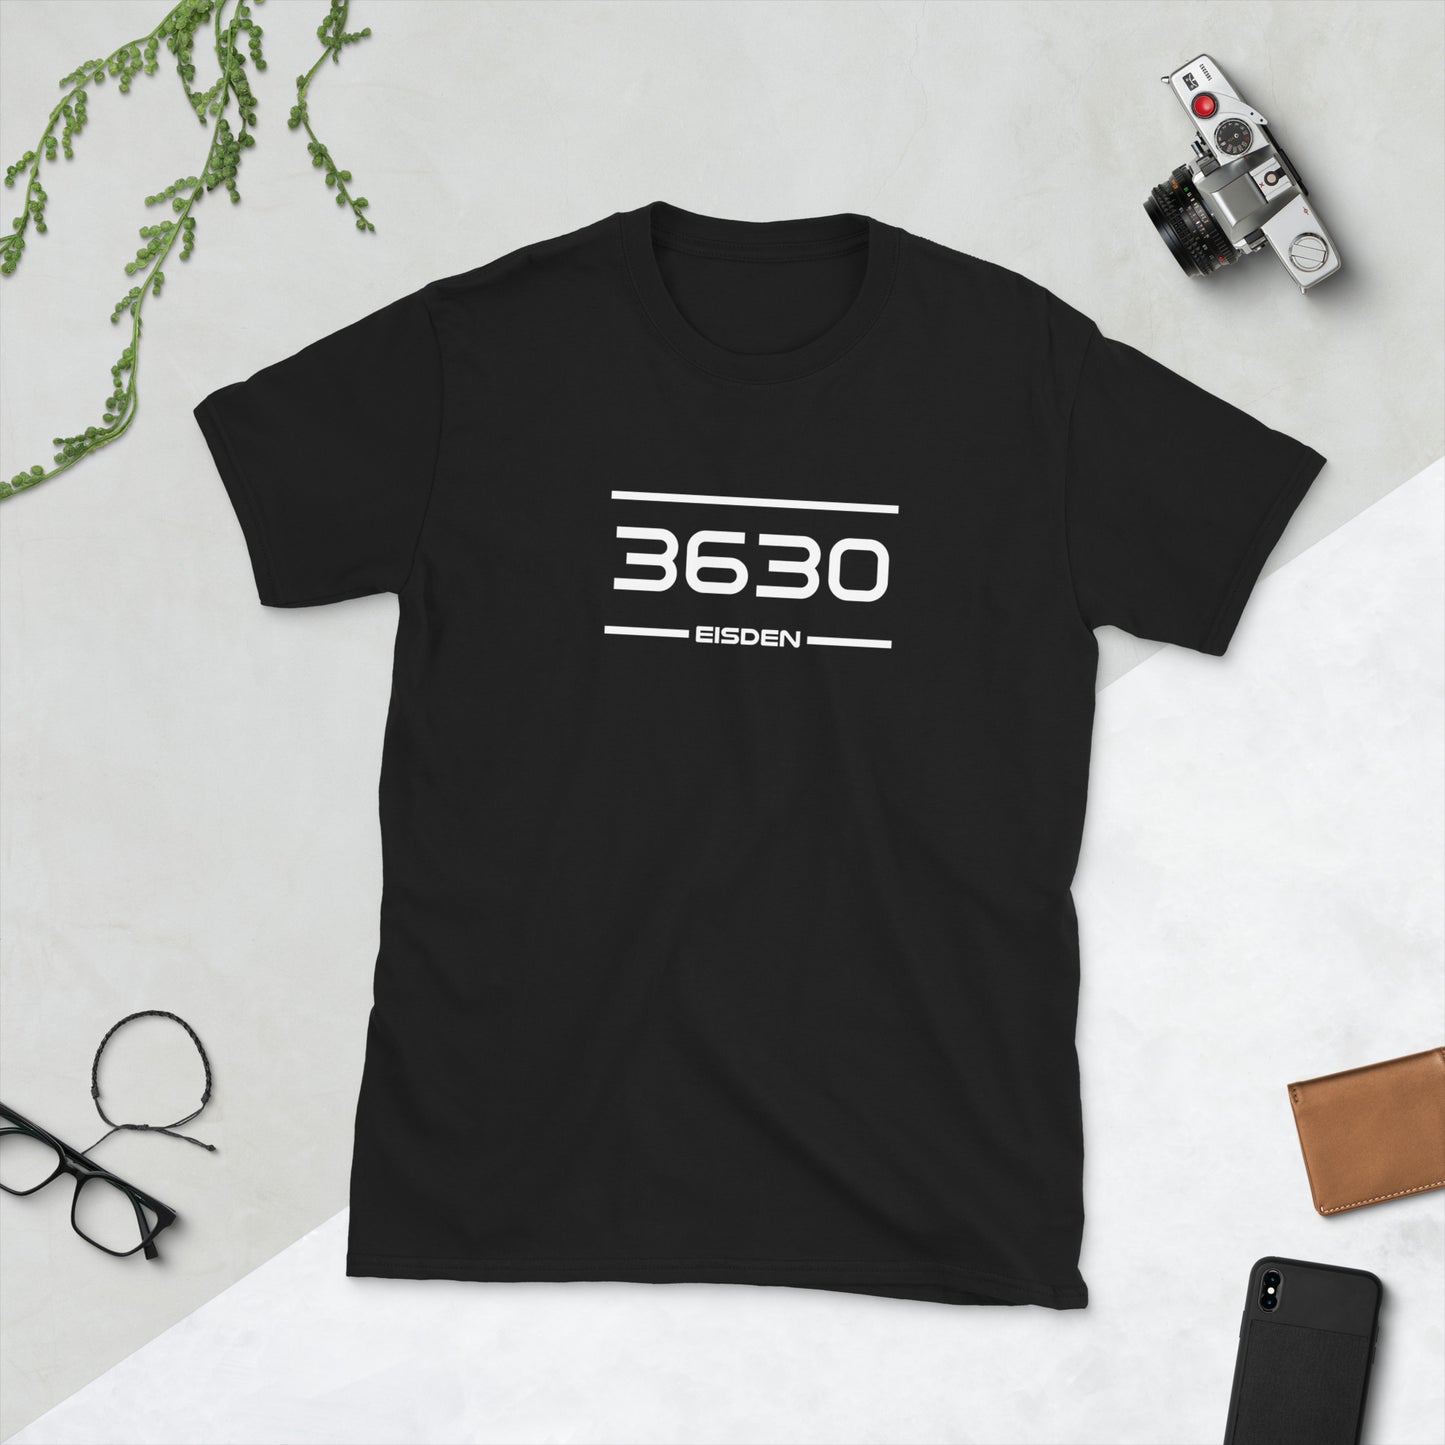 Tshirt - 3630 - Eisden